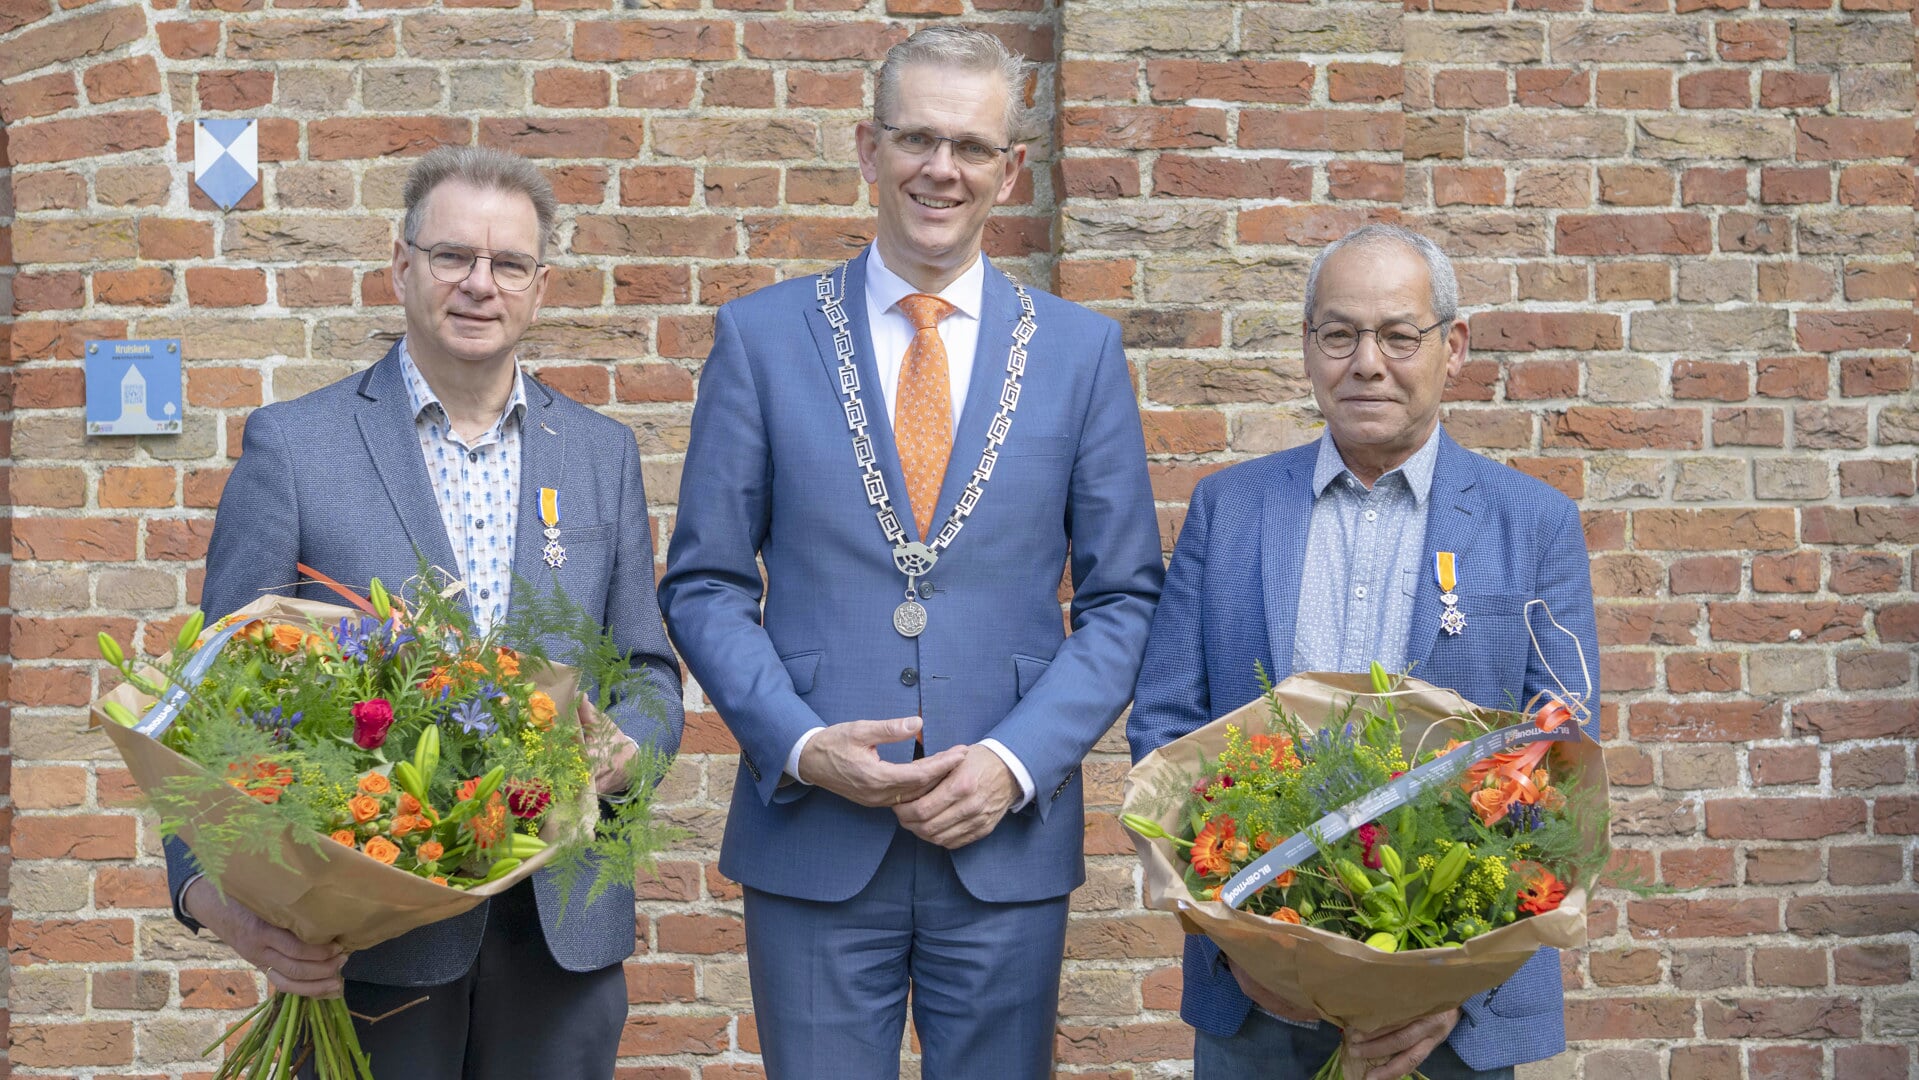 Feestelijke uitreiking lintjes aan Gooitzen van der Schaaf (links) en Mohammed Yettefti (rechts). Met in het midden burgemeester Jeroen Gebben.